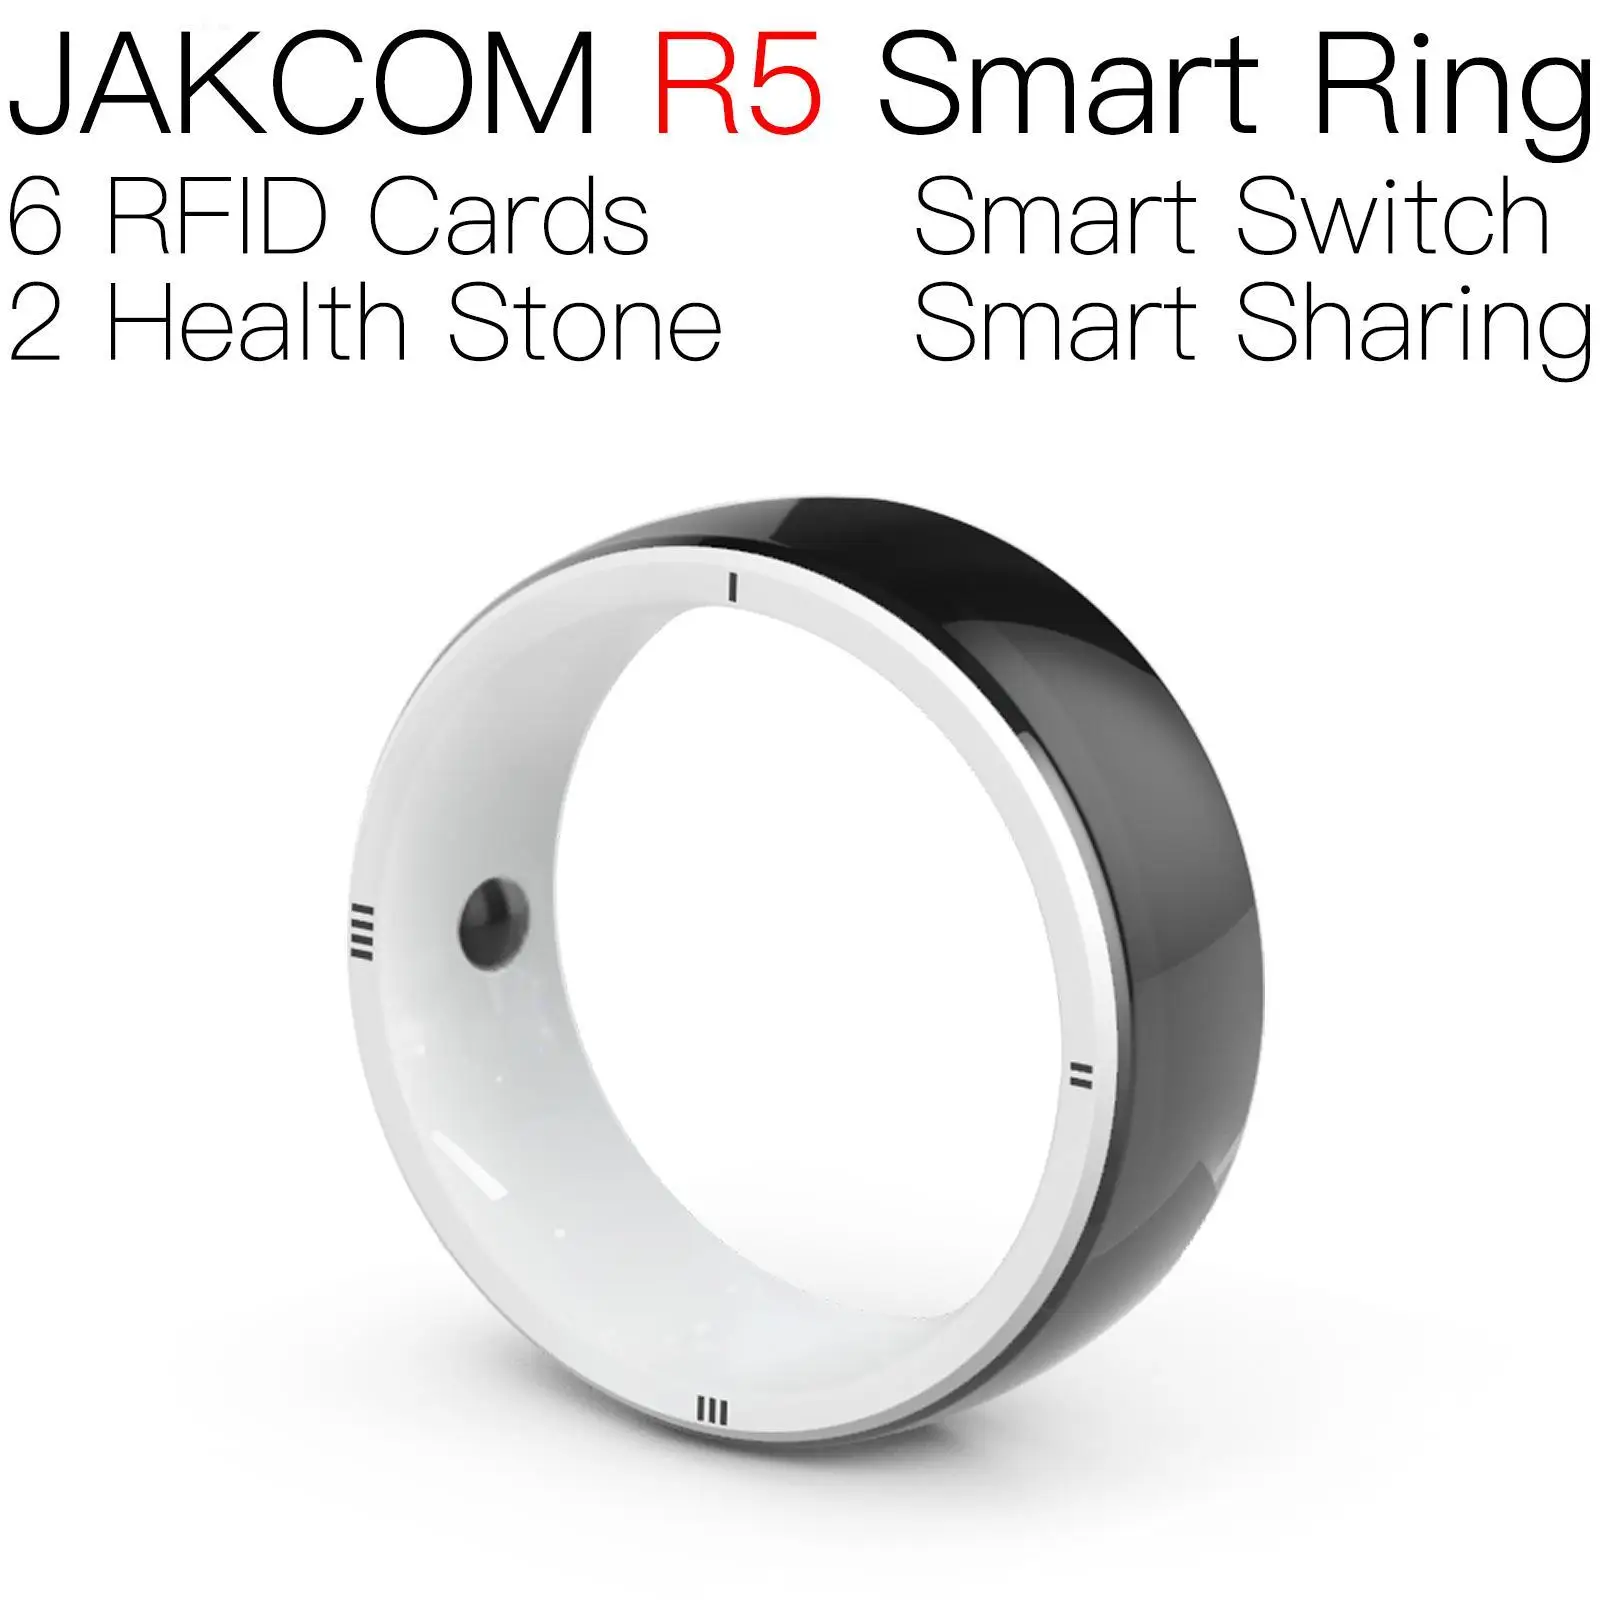 

Умное кольцо JAKCOM R5, новый продукт как часы, мужские электронные часы, умный спортивный браслет 6 с Wi-Fi переключателем homekit